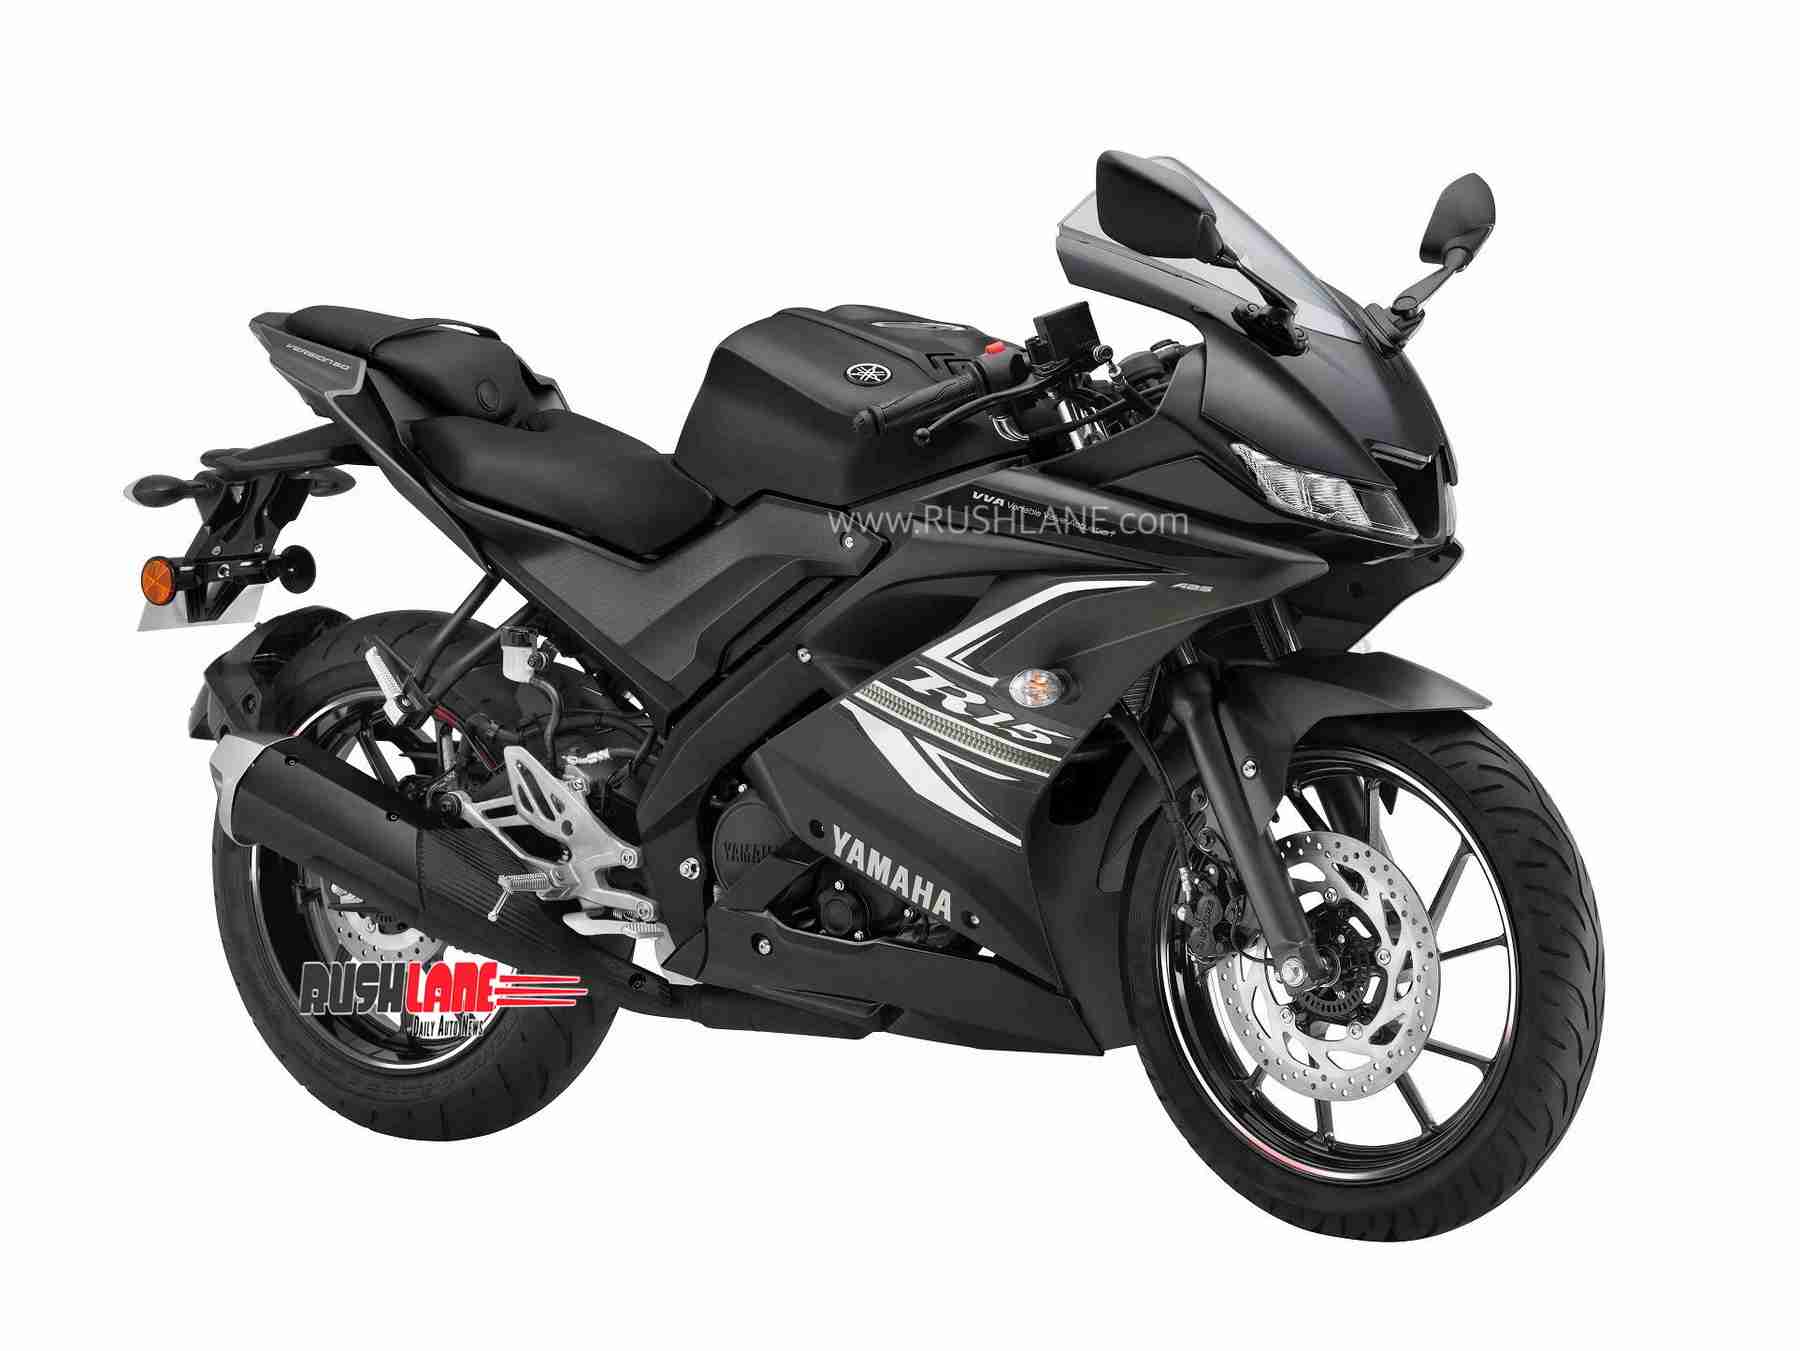 Yamaha R15 BS6 launch price